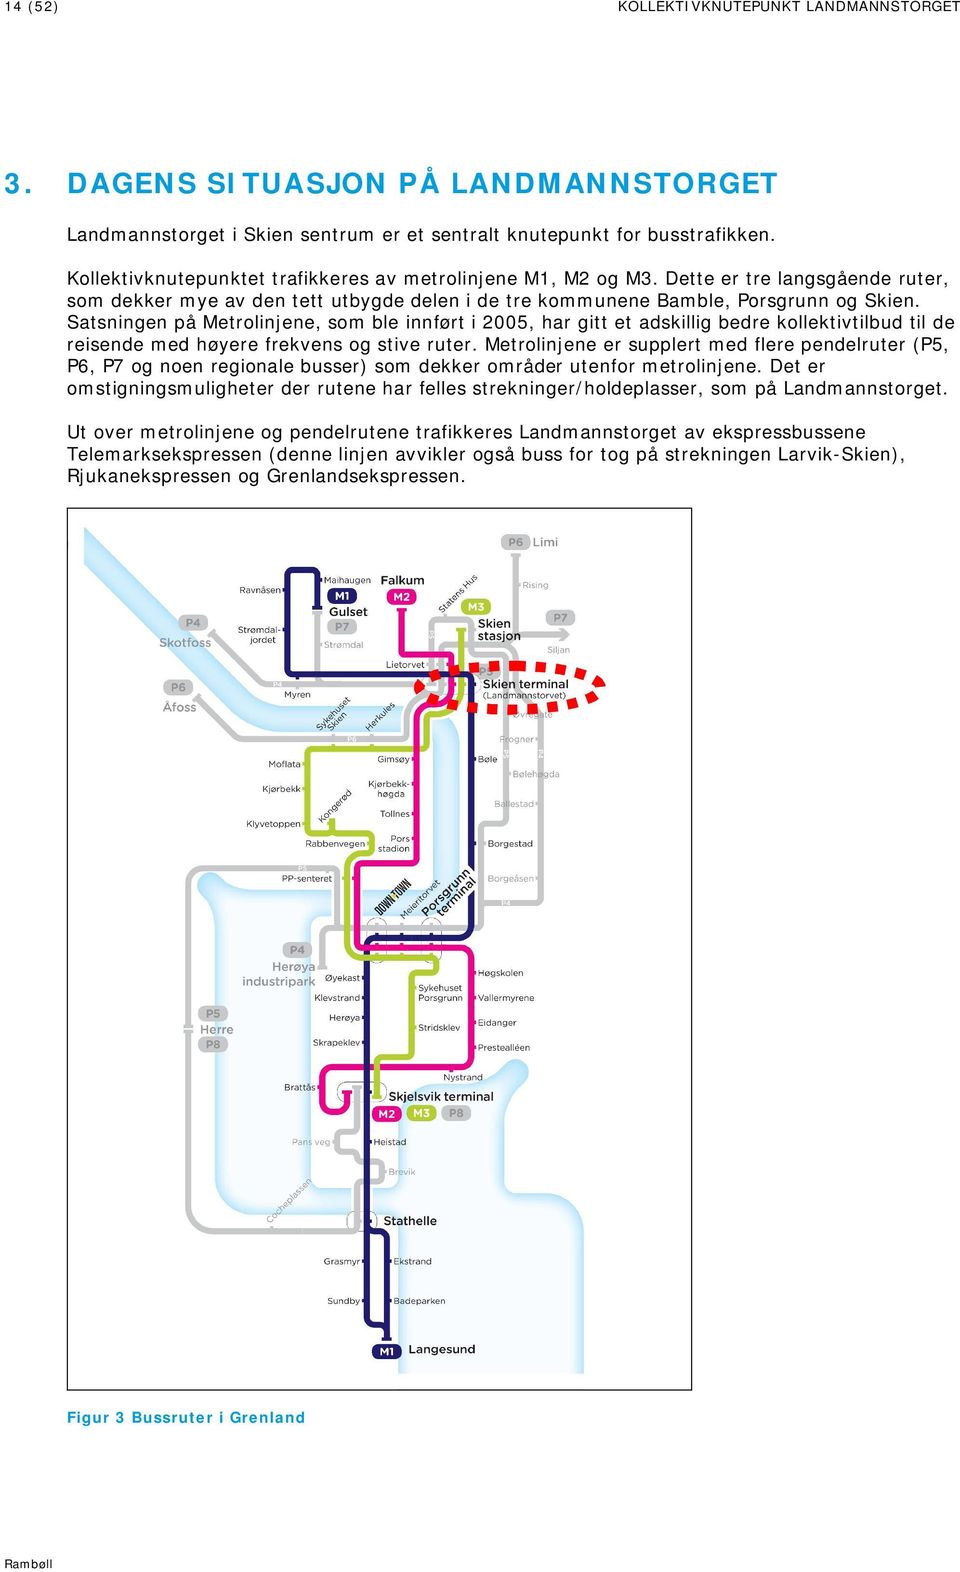 Satsningen på Metrolinjene, som ble innført i 2005, har gitt et adskillig bedre kollektivtilbud til de reisende med høyere frekvens og stive ruter.